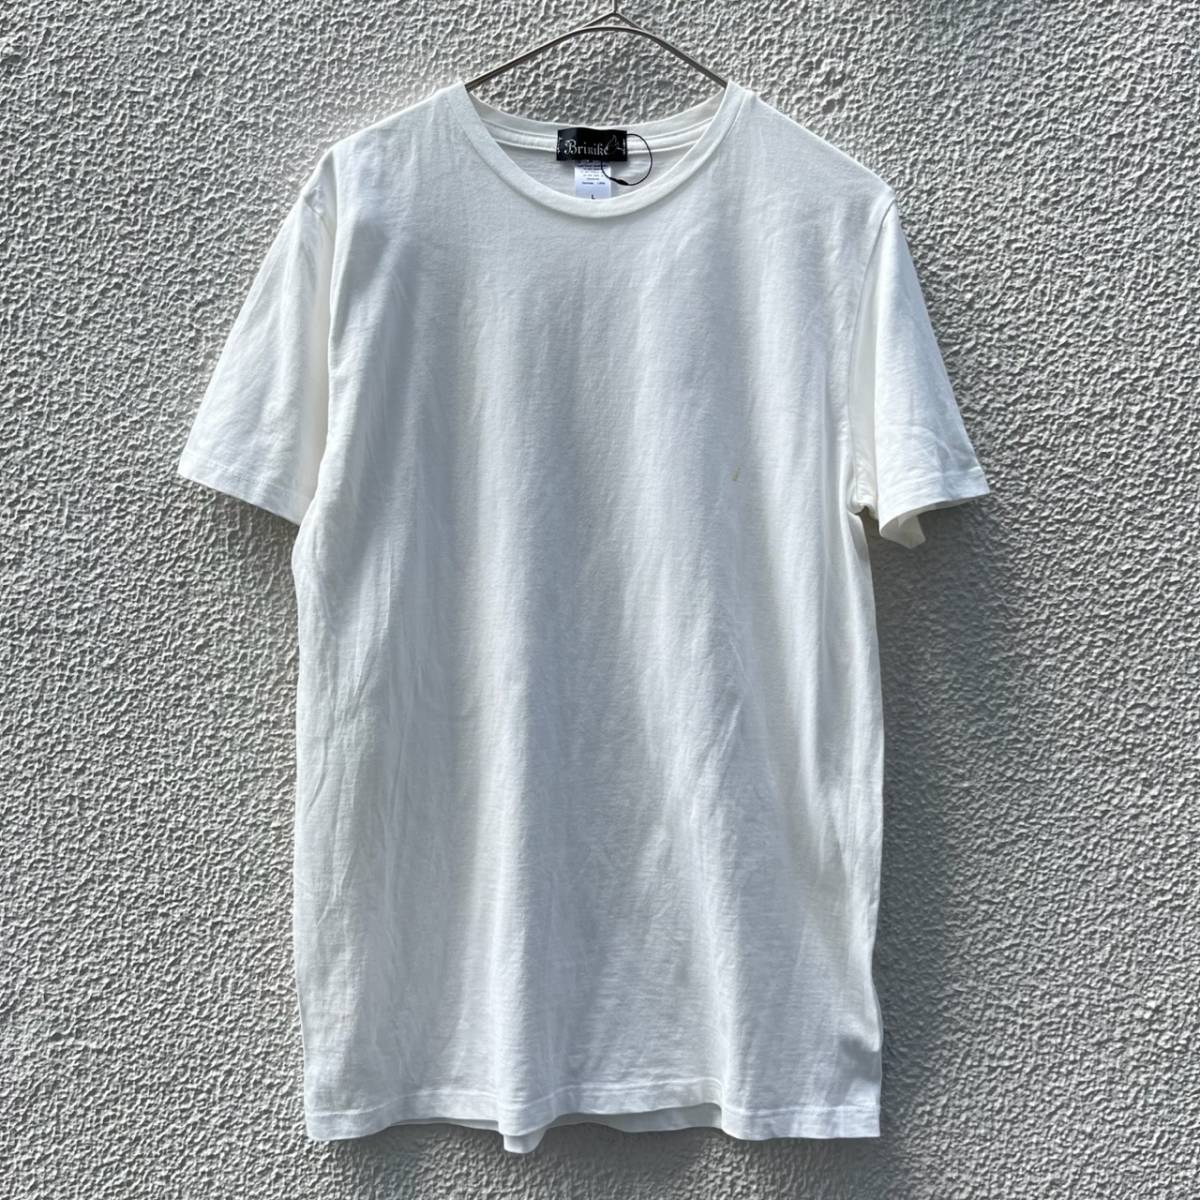 Brinike ブリニケ Lサイズ Tシャツ 無地 半袖 ホワイト